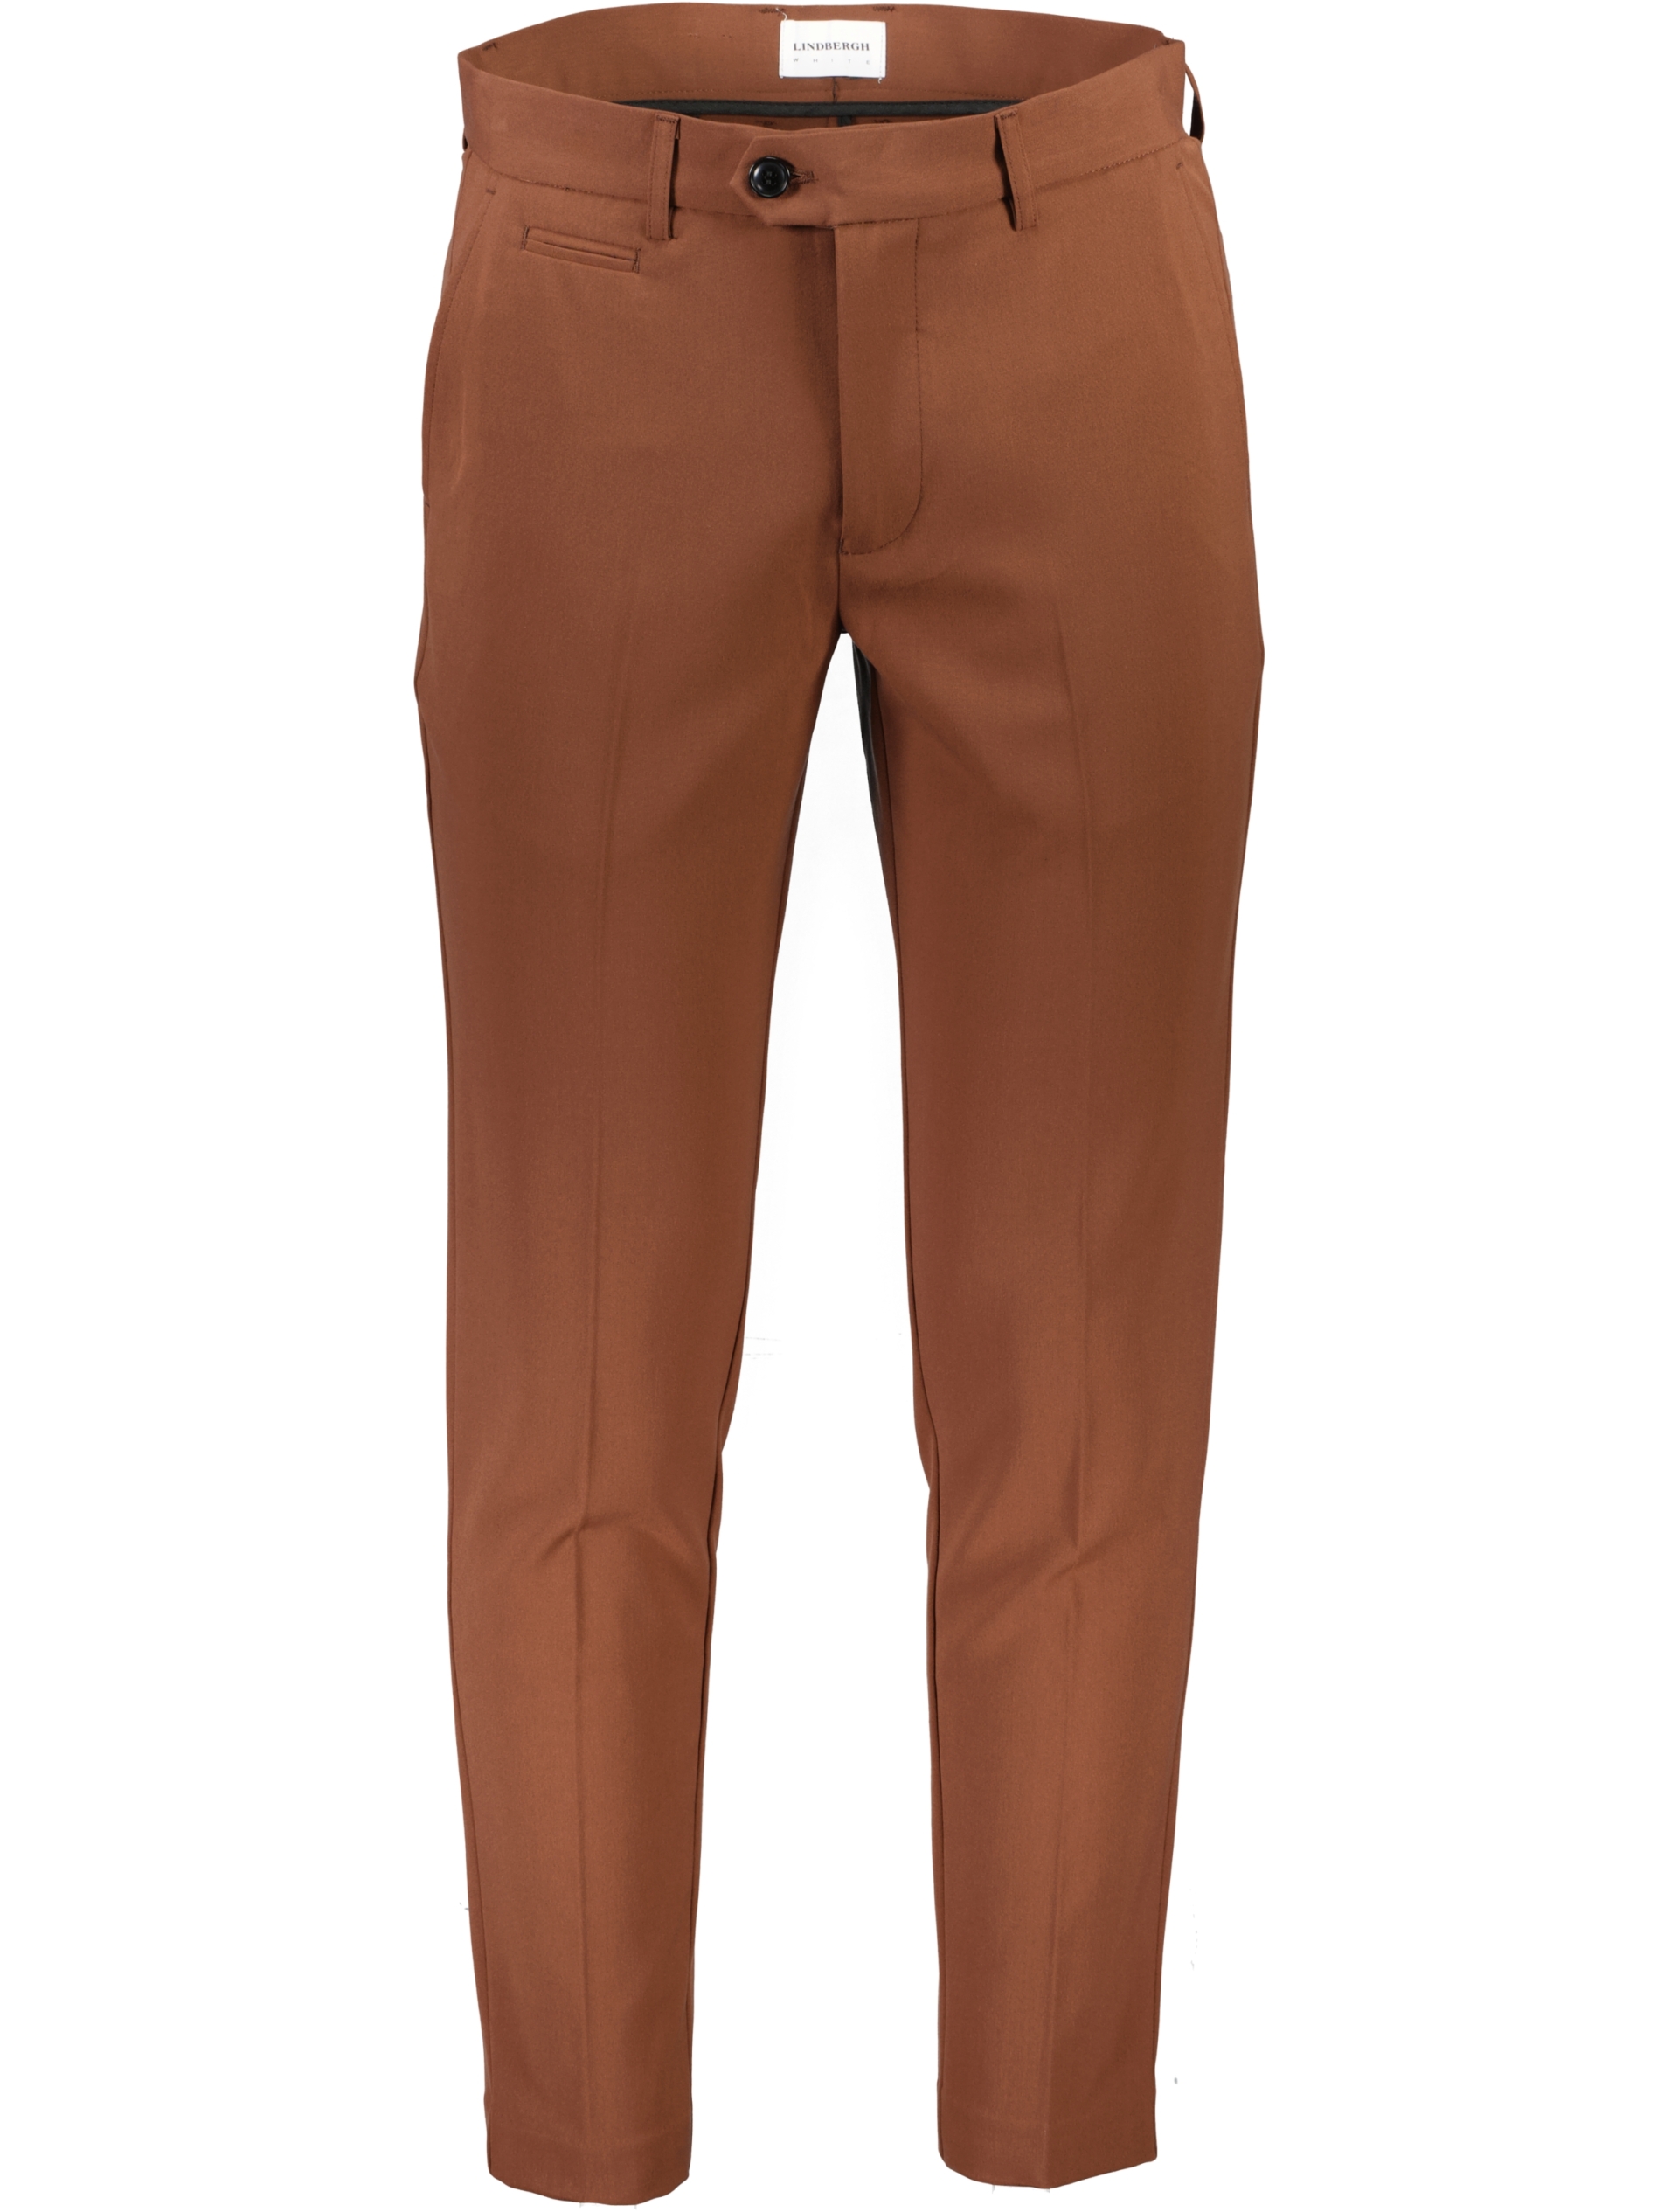 Lindbergh Performance pants brown / hazel brown